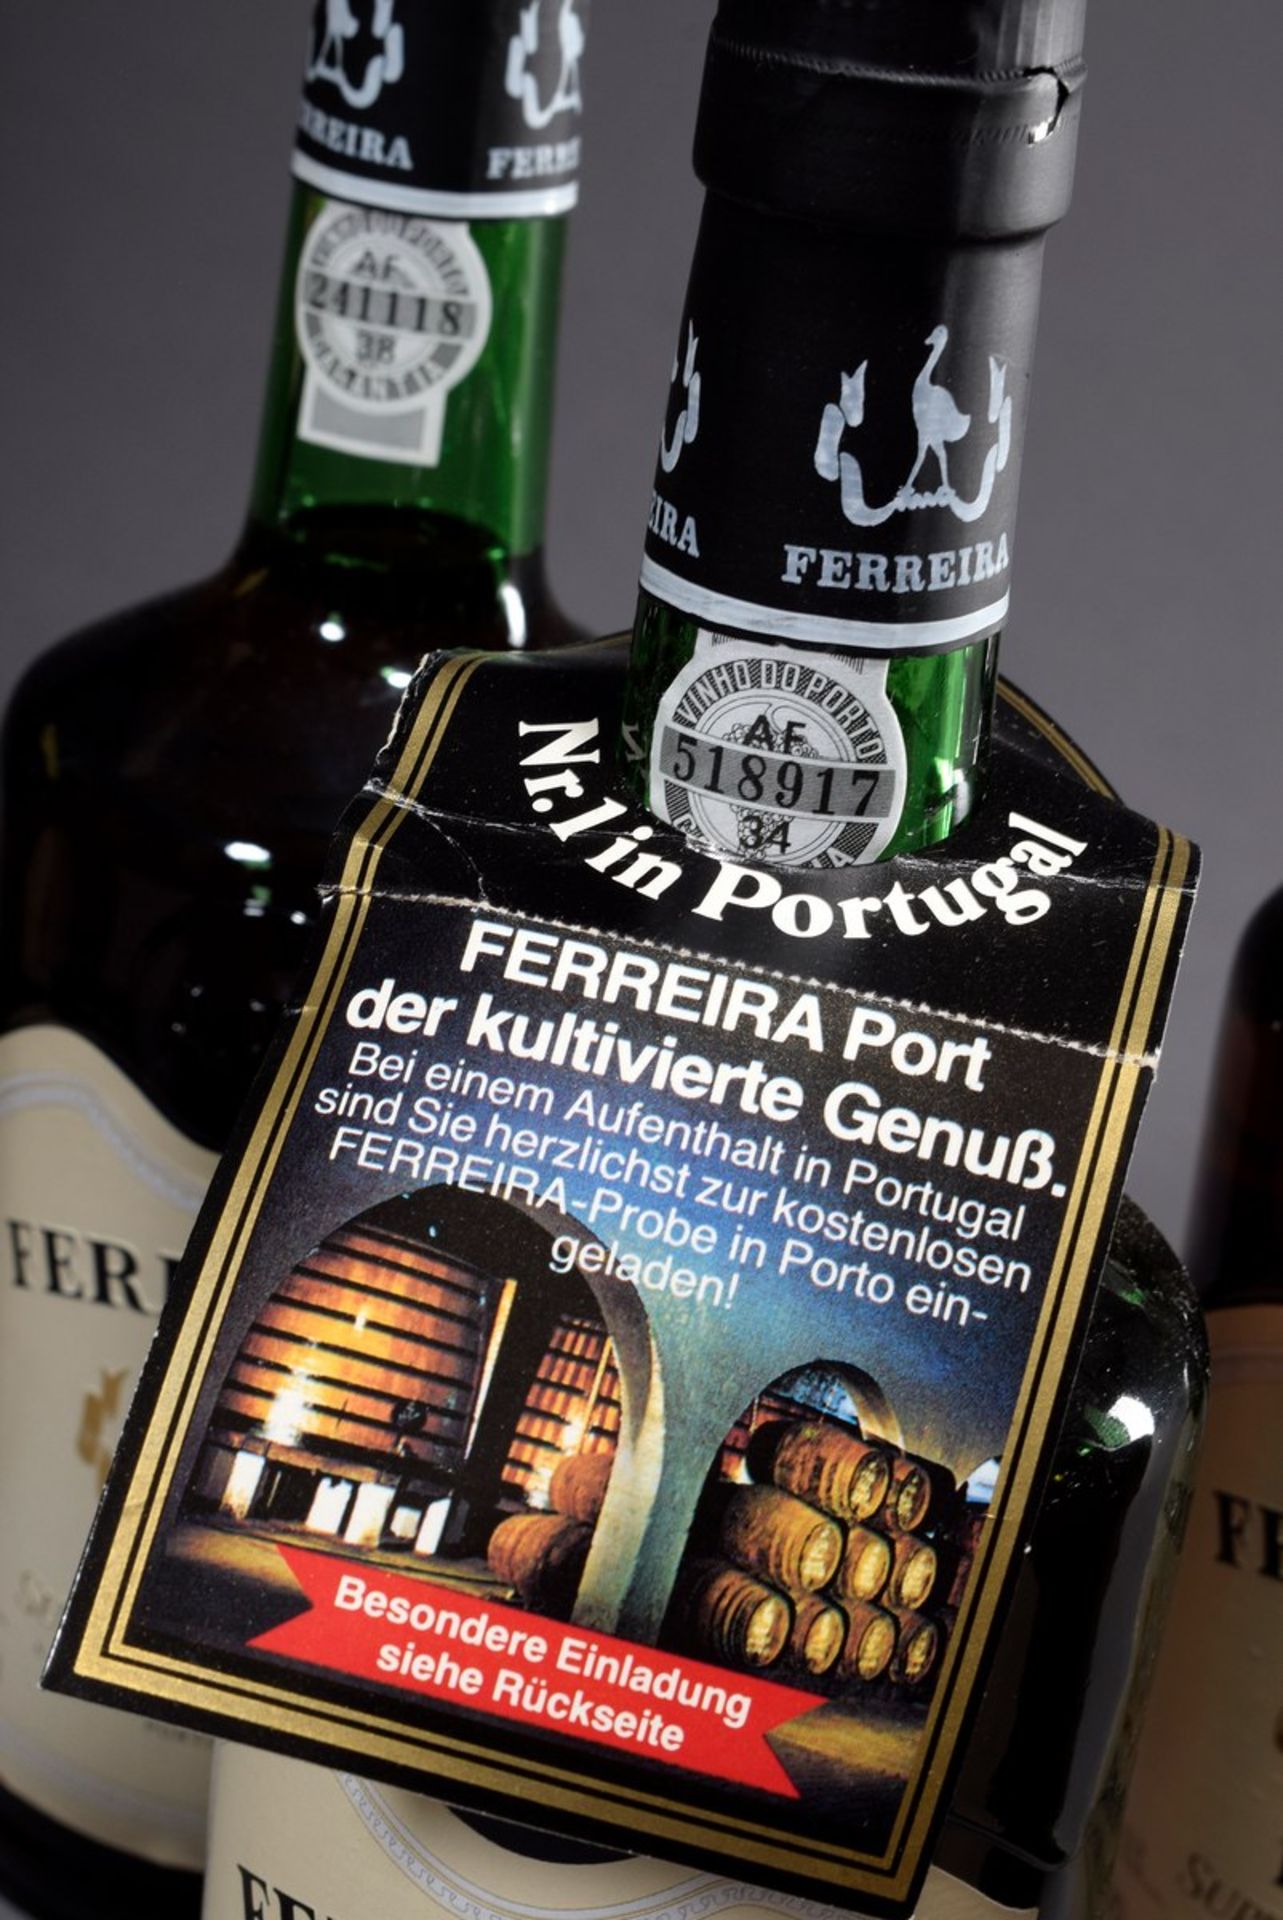 8 Flaschen Portwein "Ferreira Port Superior White", Portugal, kein Jg., 20. Jh., enthält Sulfite8 - Bild 4 aus 5